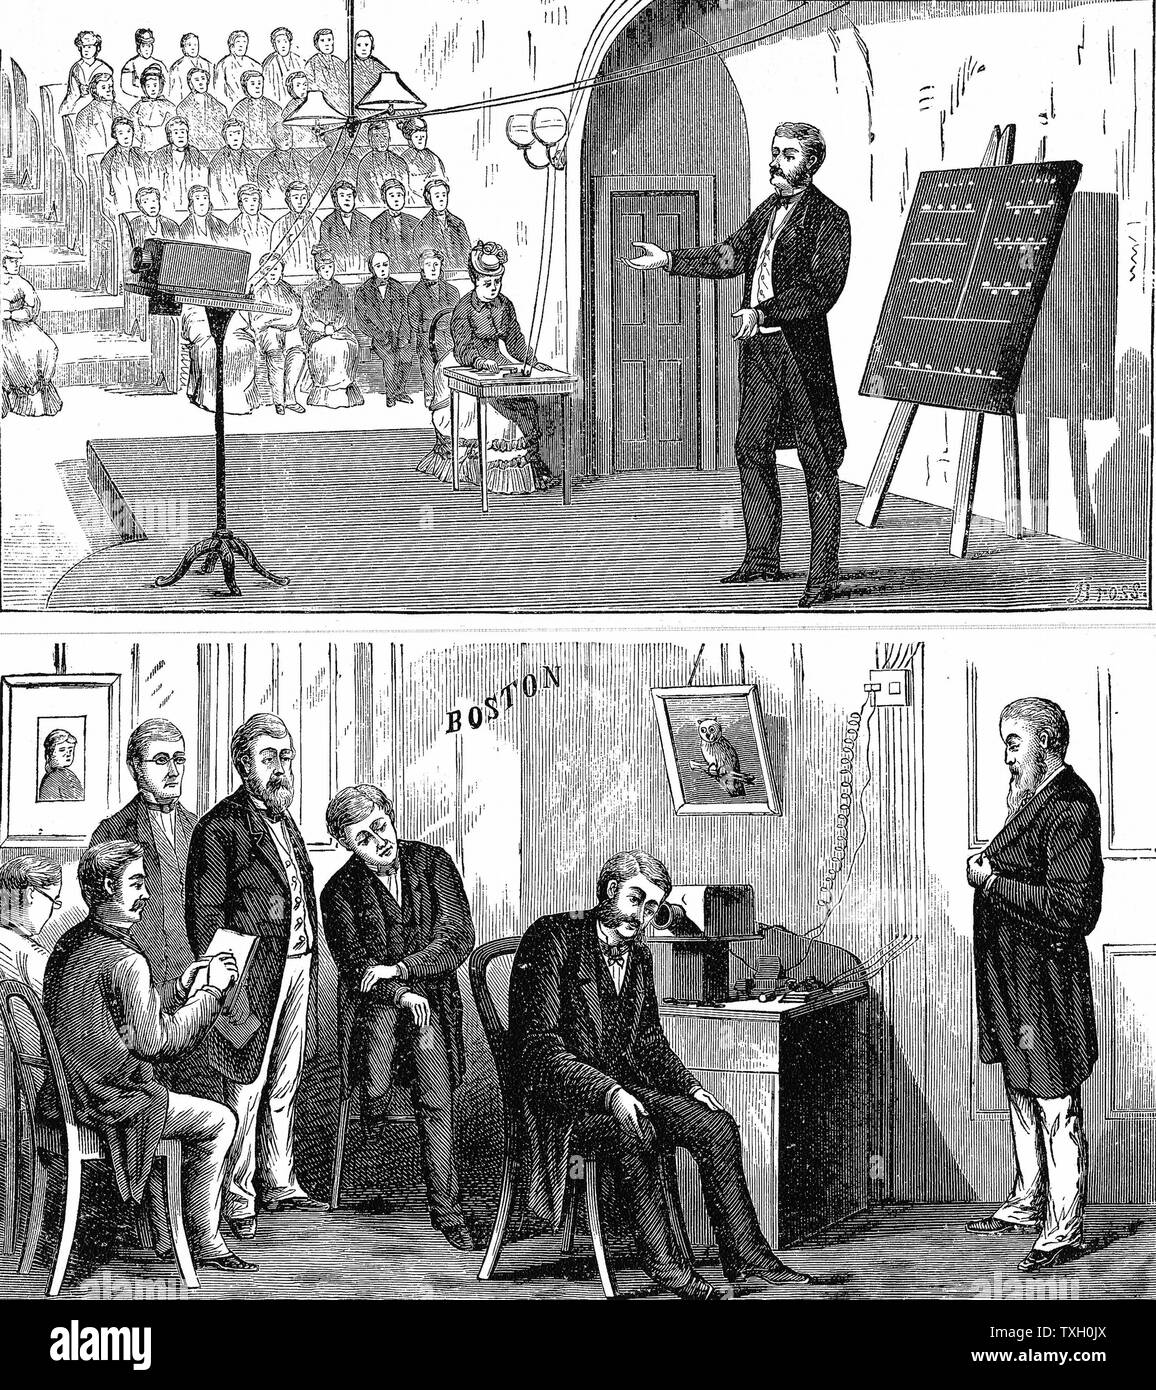 Alexander Graham Bell (1847-1922), inventeur américain d'origine écossaise ; téléphone breveté 1876. Photo publié 1907 Banque D'Images